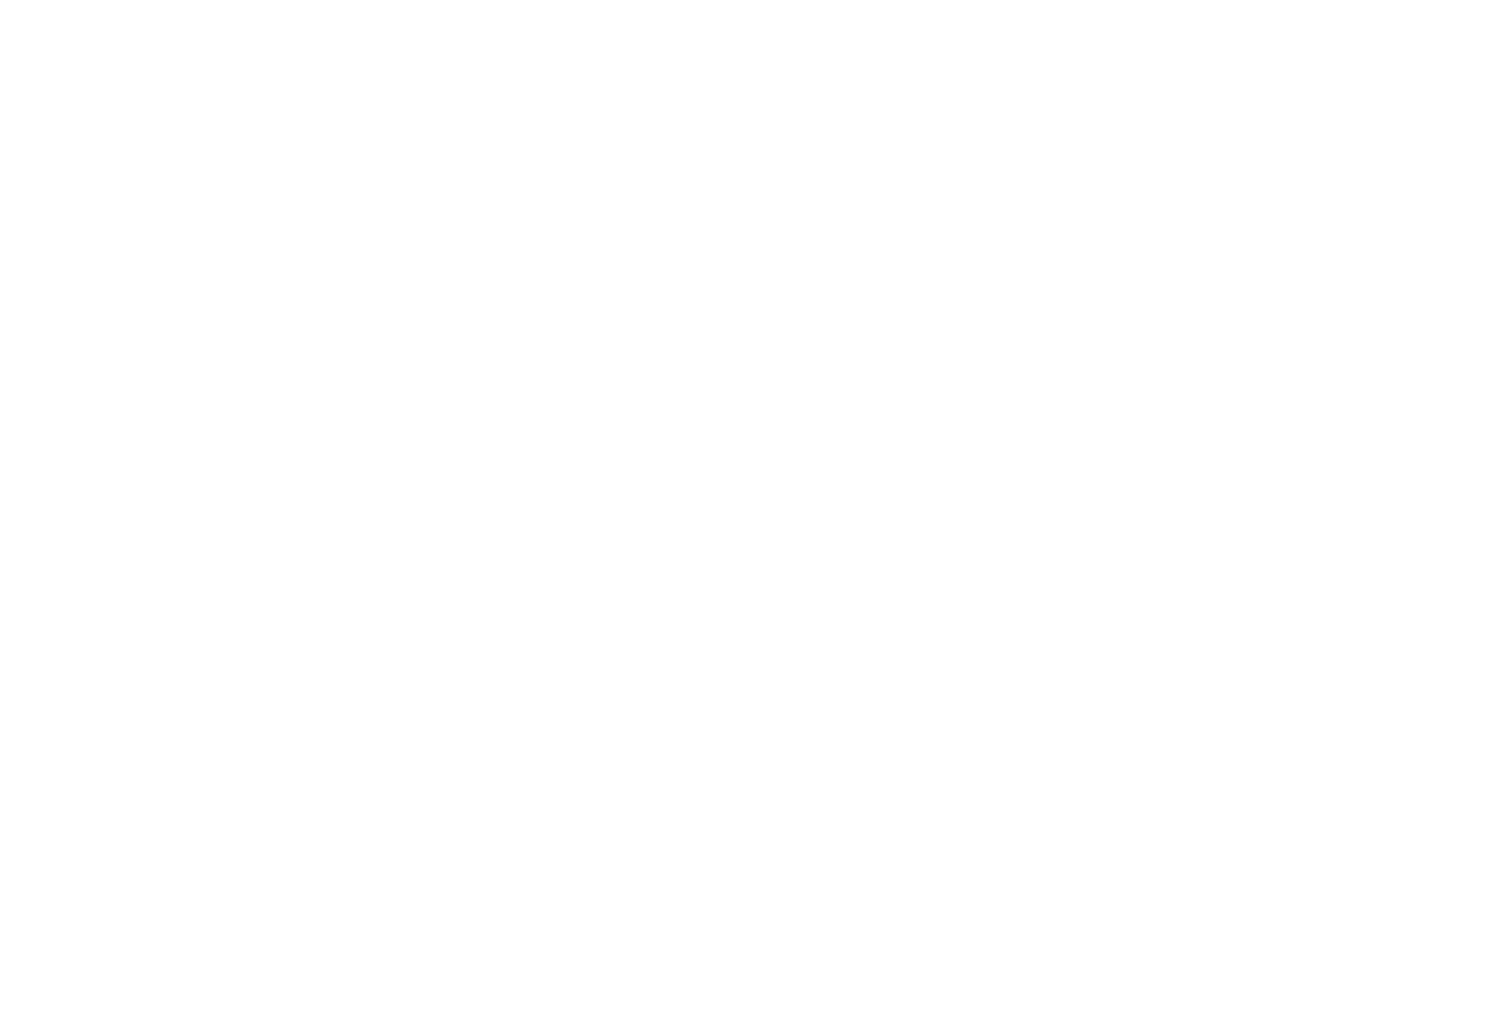 Shane Hipps